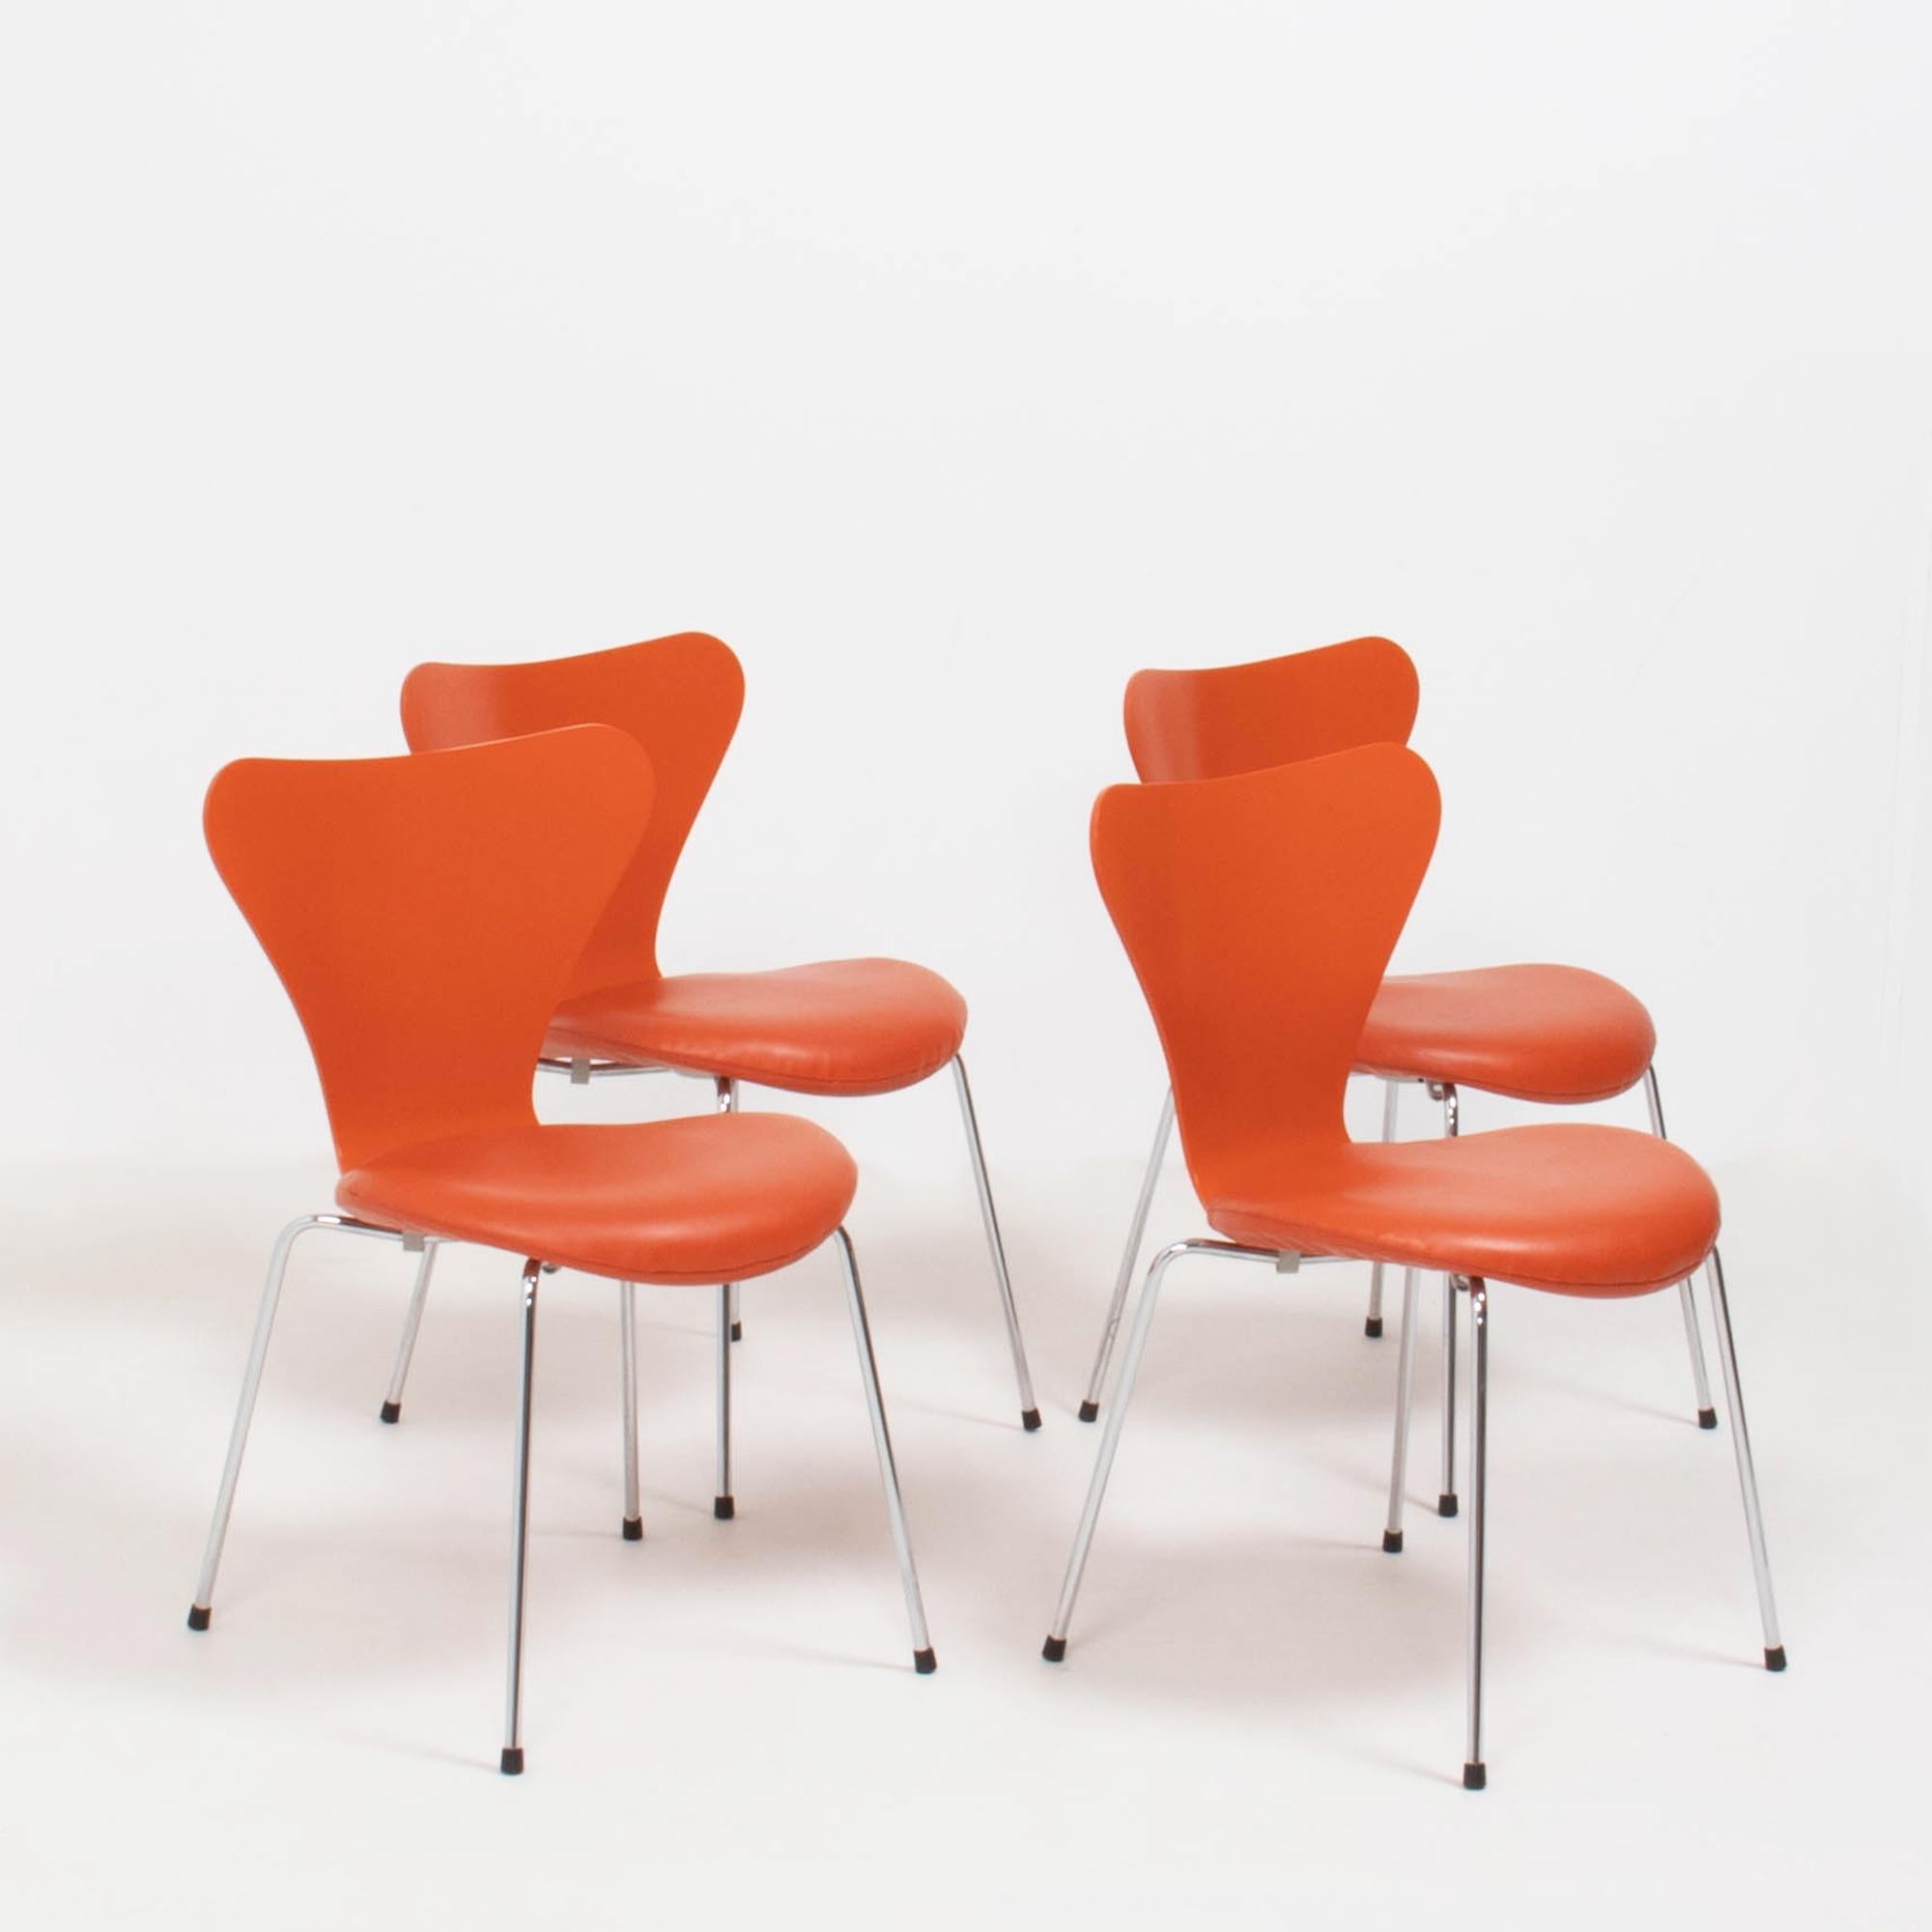 Der 1955 von Arne Jacobsen entworfene Stuhl der Serie 7 Dining wird seither von Fritz Hansen hergestellt. Als echte Design-Ikone ist die Serie 7 zu einem der meistverkauften Stühle der Geschichte geworden.

Die Stühle sind aus druckgeformtem